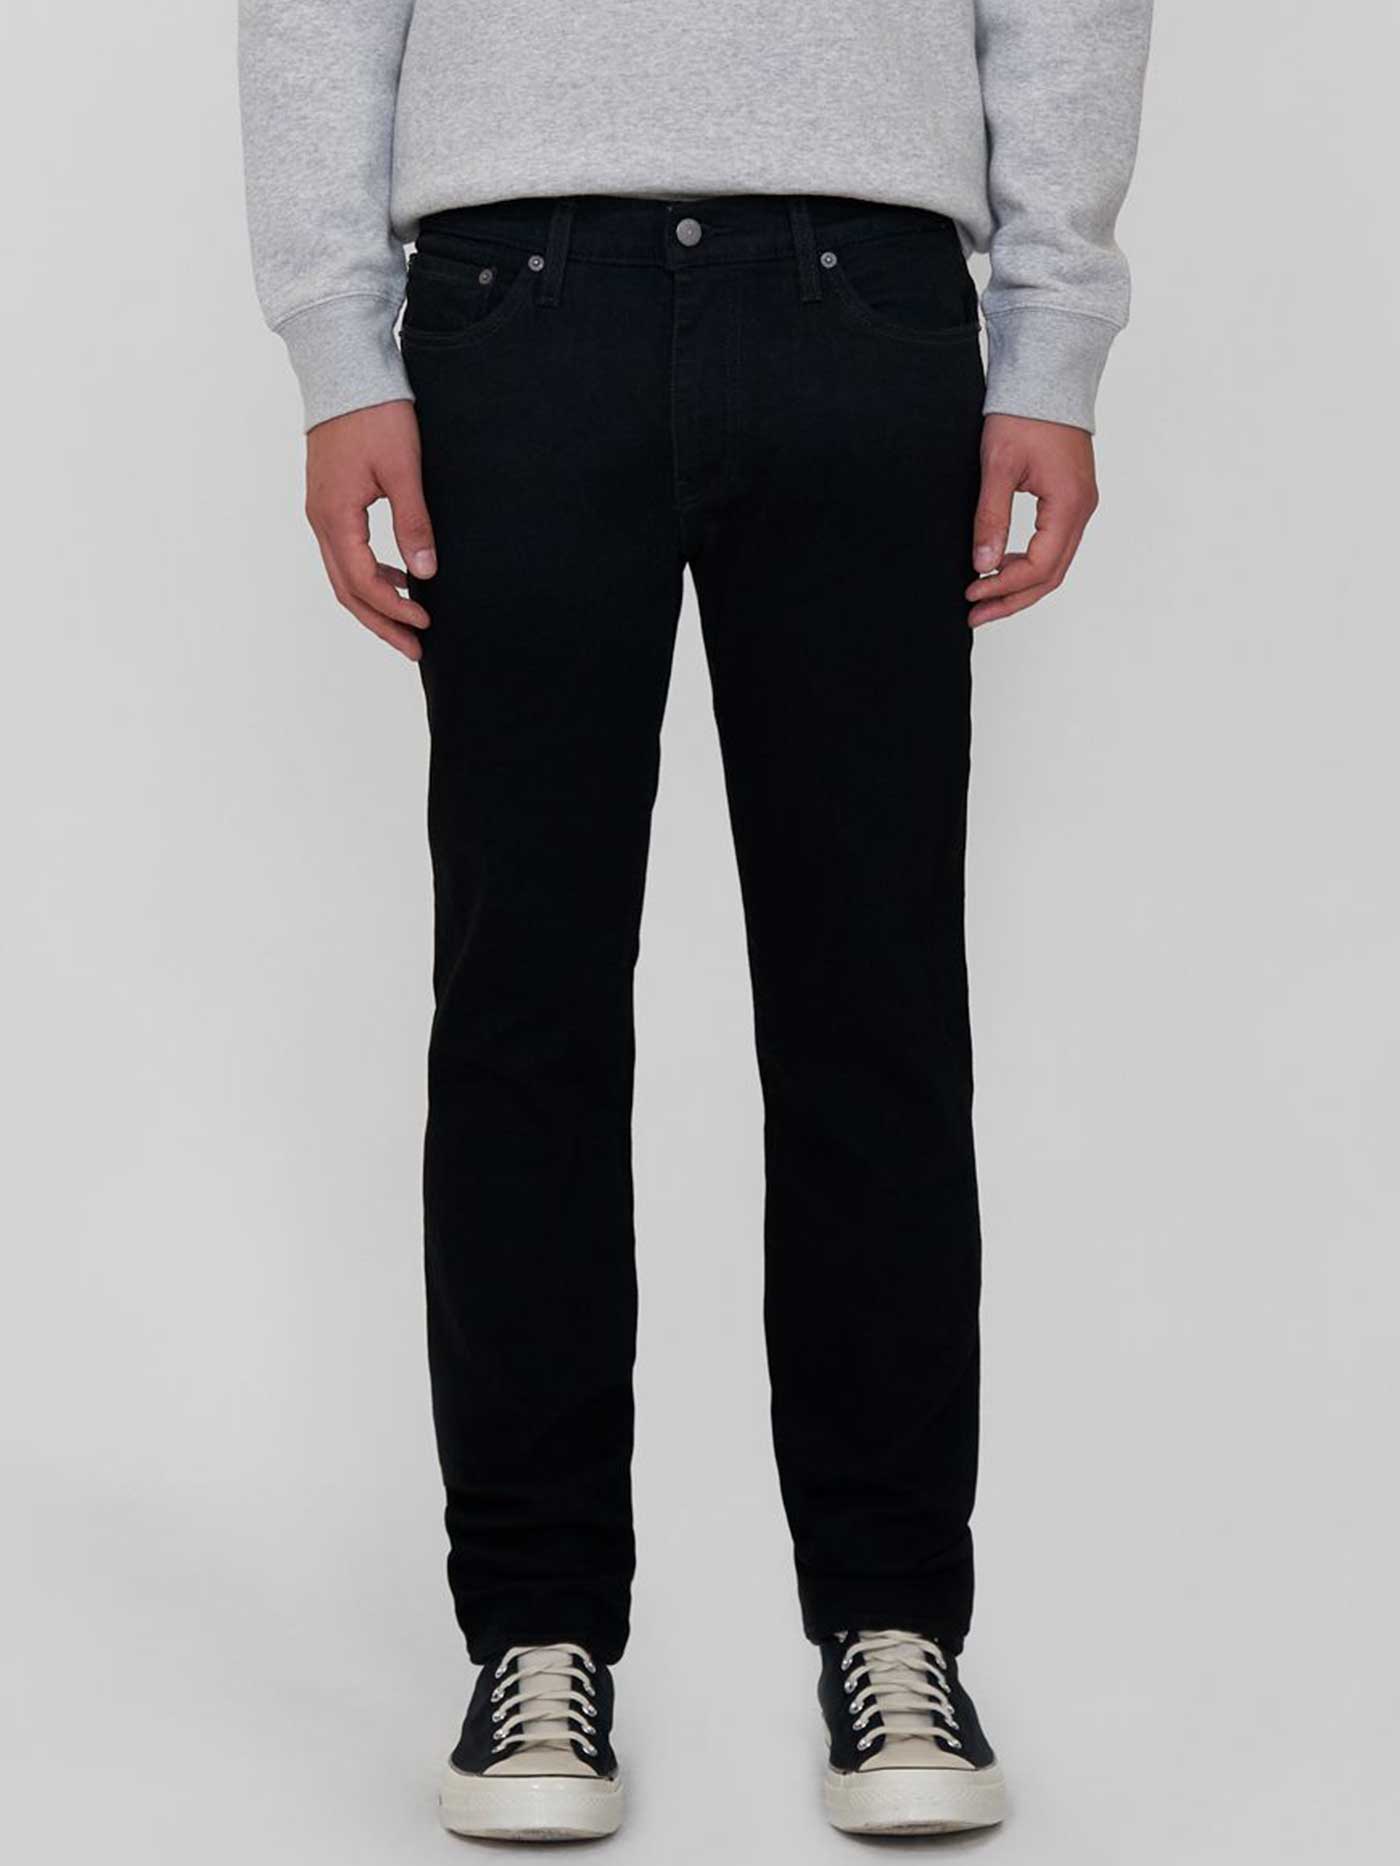 Levis 511 Slim Fit Jeans | EMPIRE